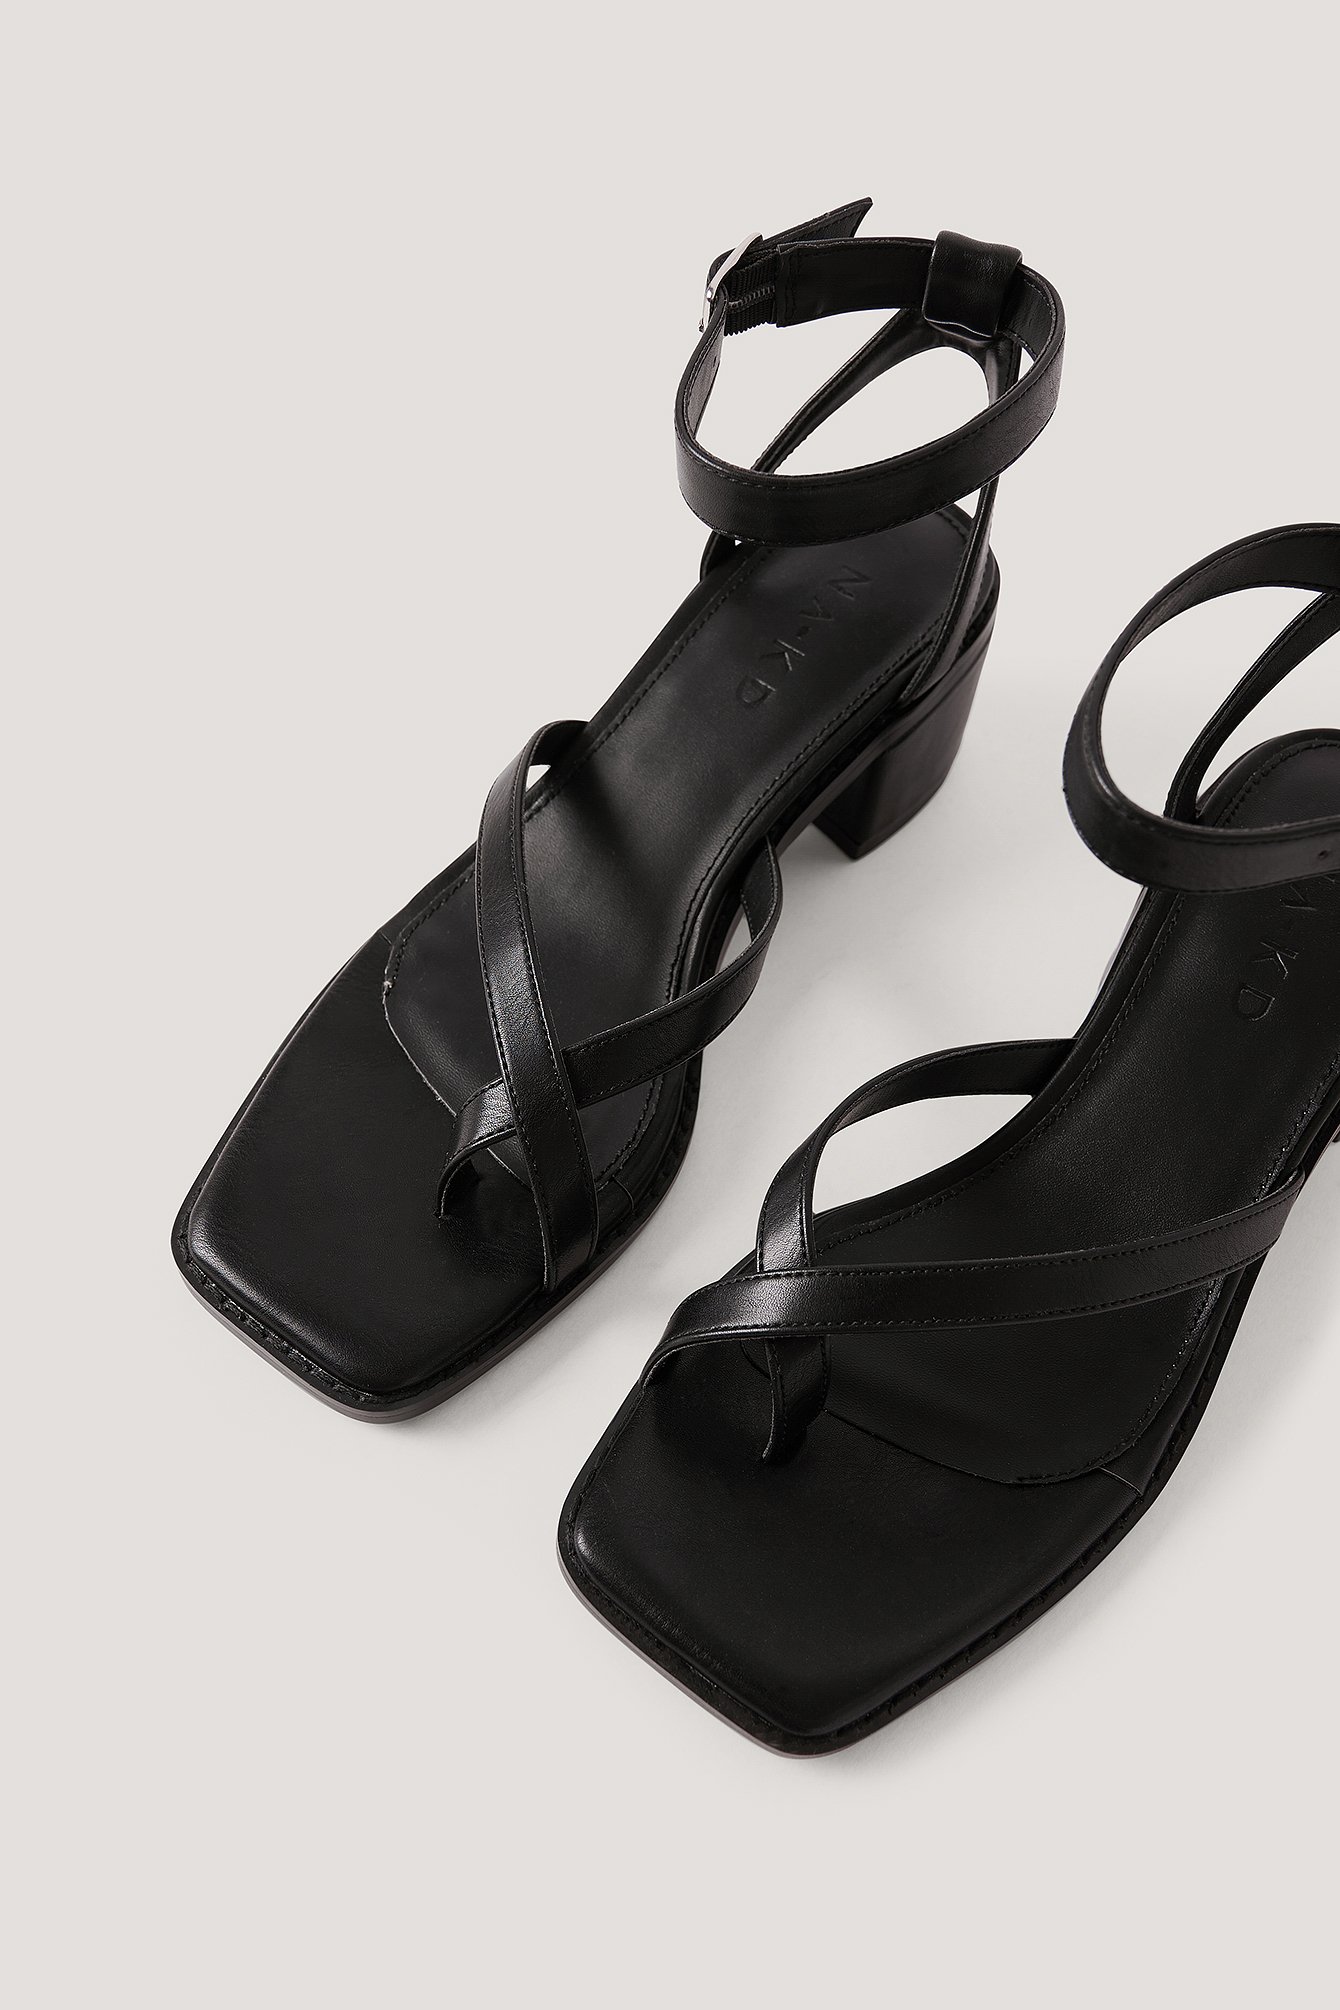 black strap block heel sandals